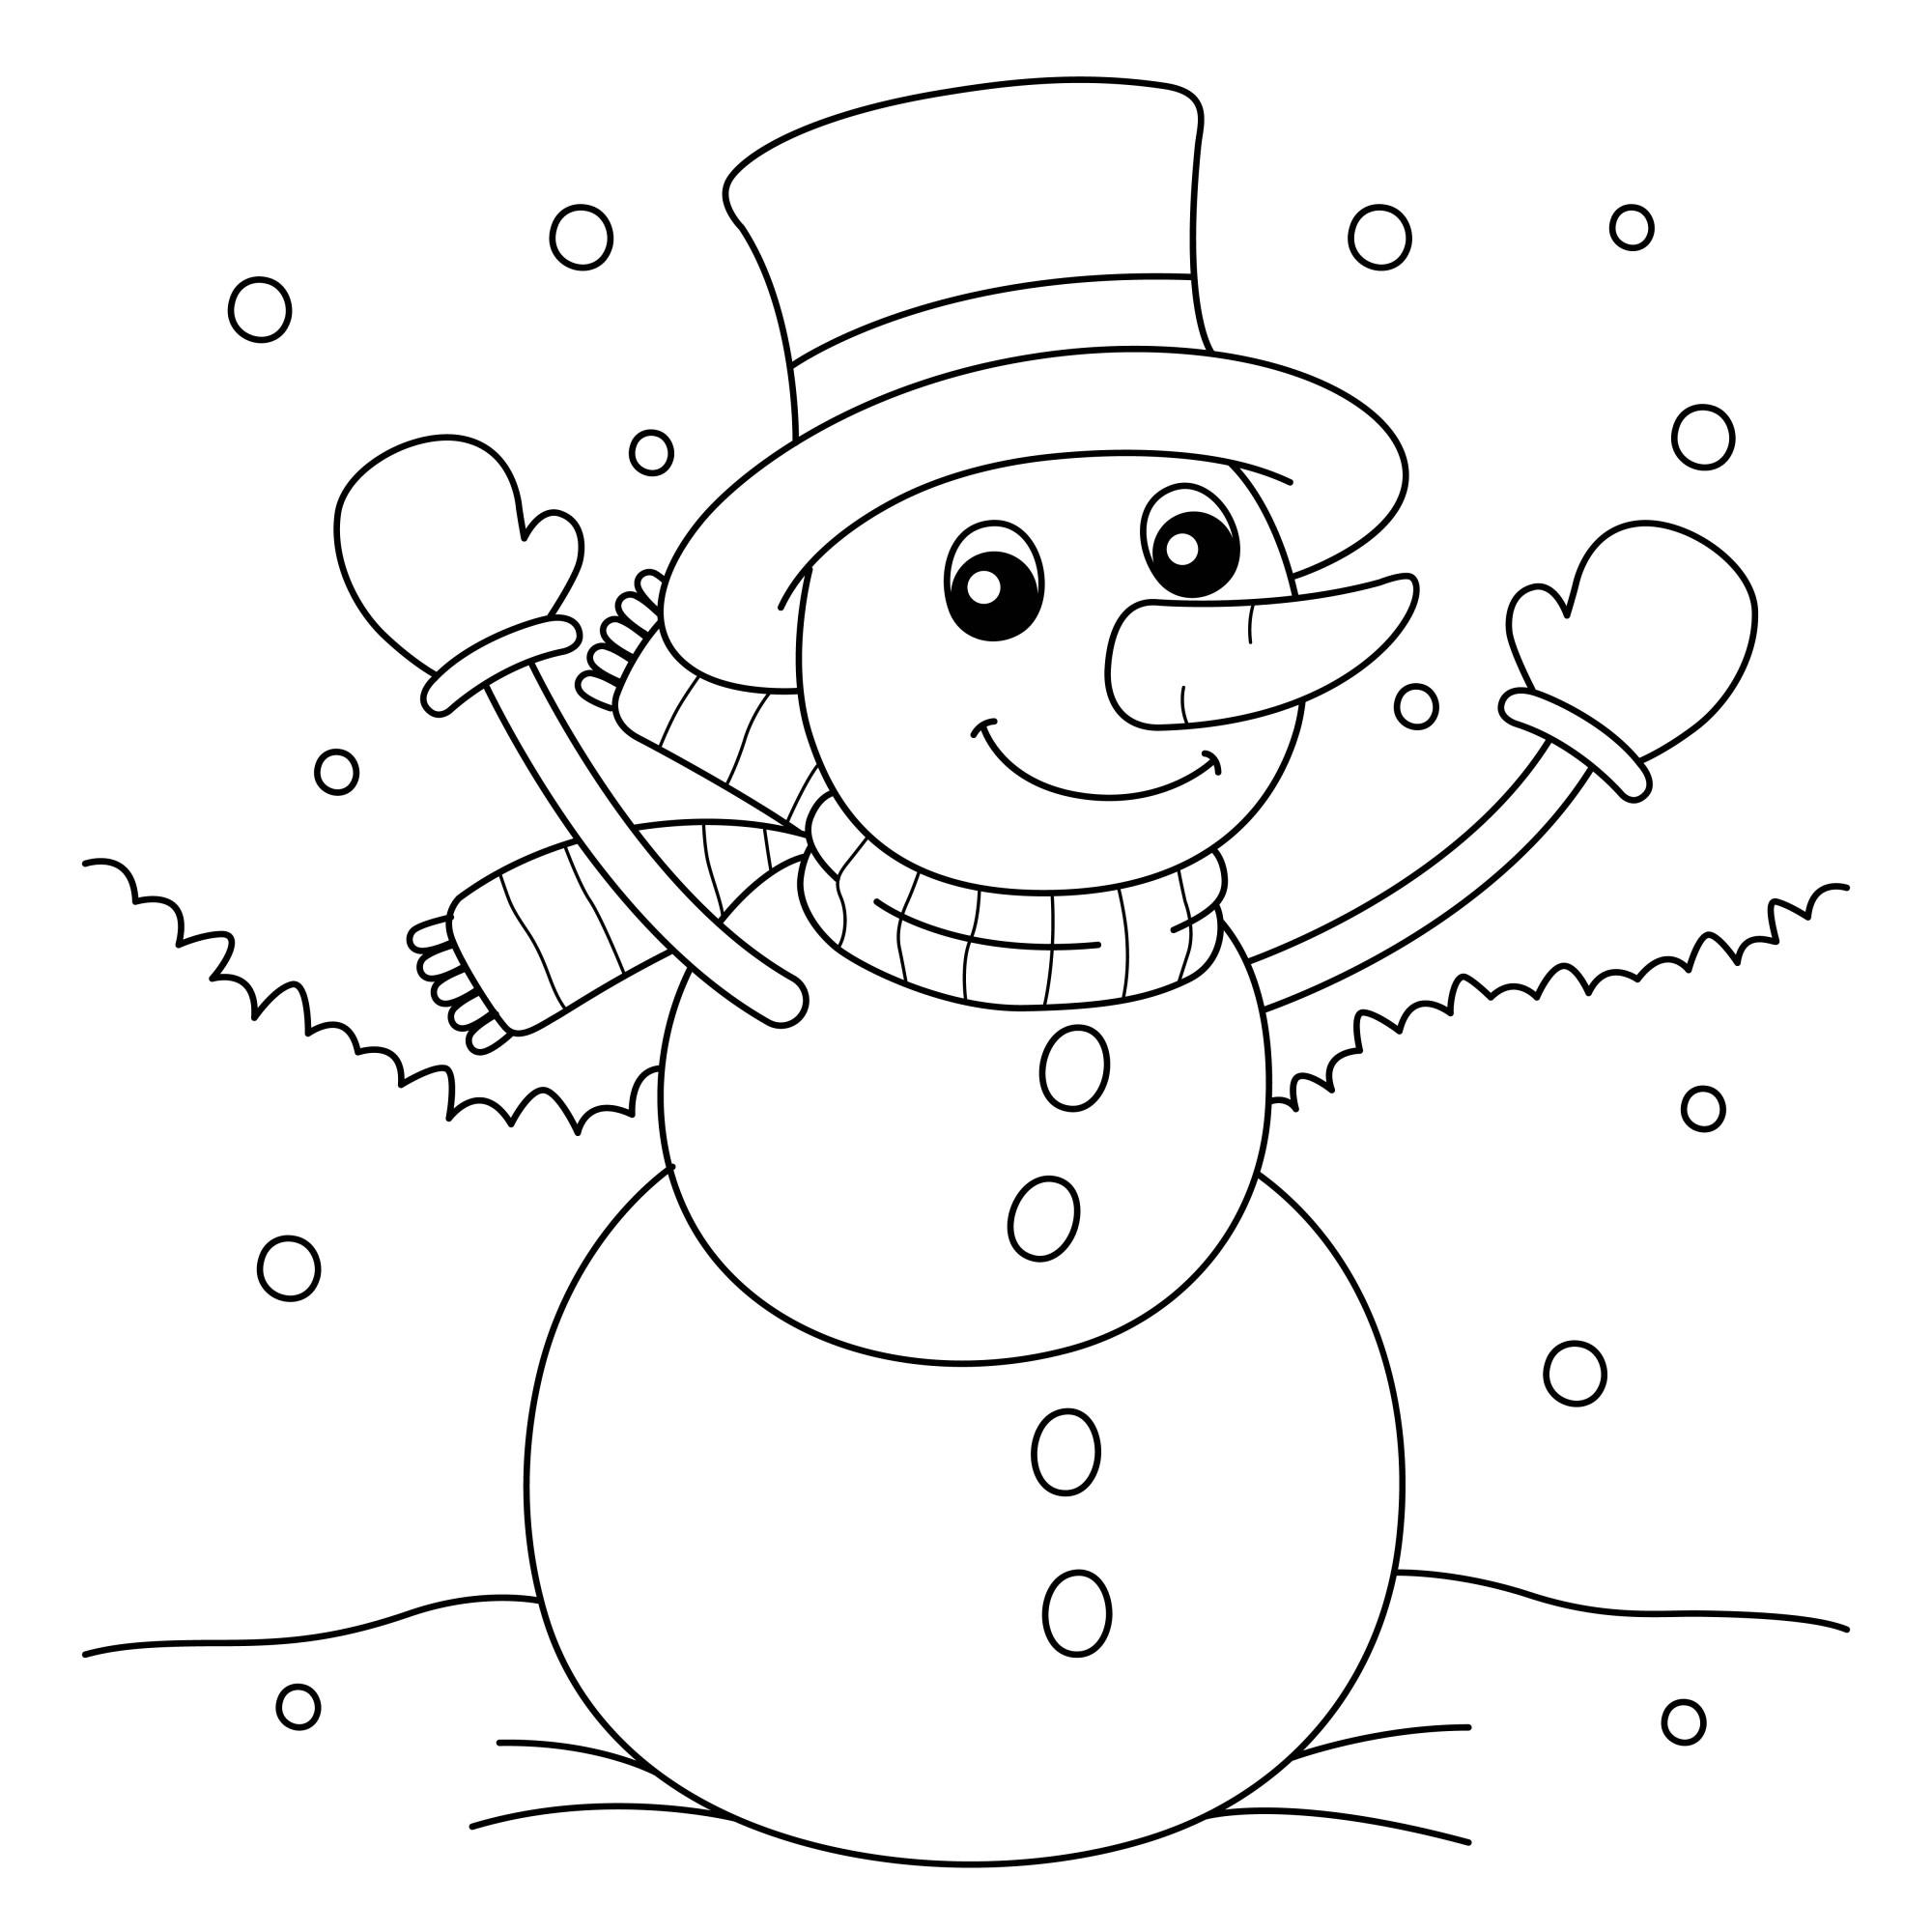 Раскраска для детей: веселый снеговик в шляпе варежках и шарфе